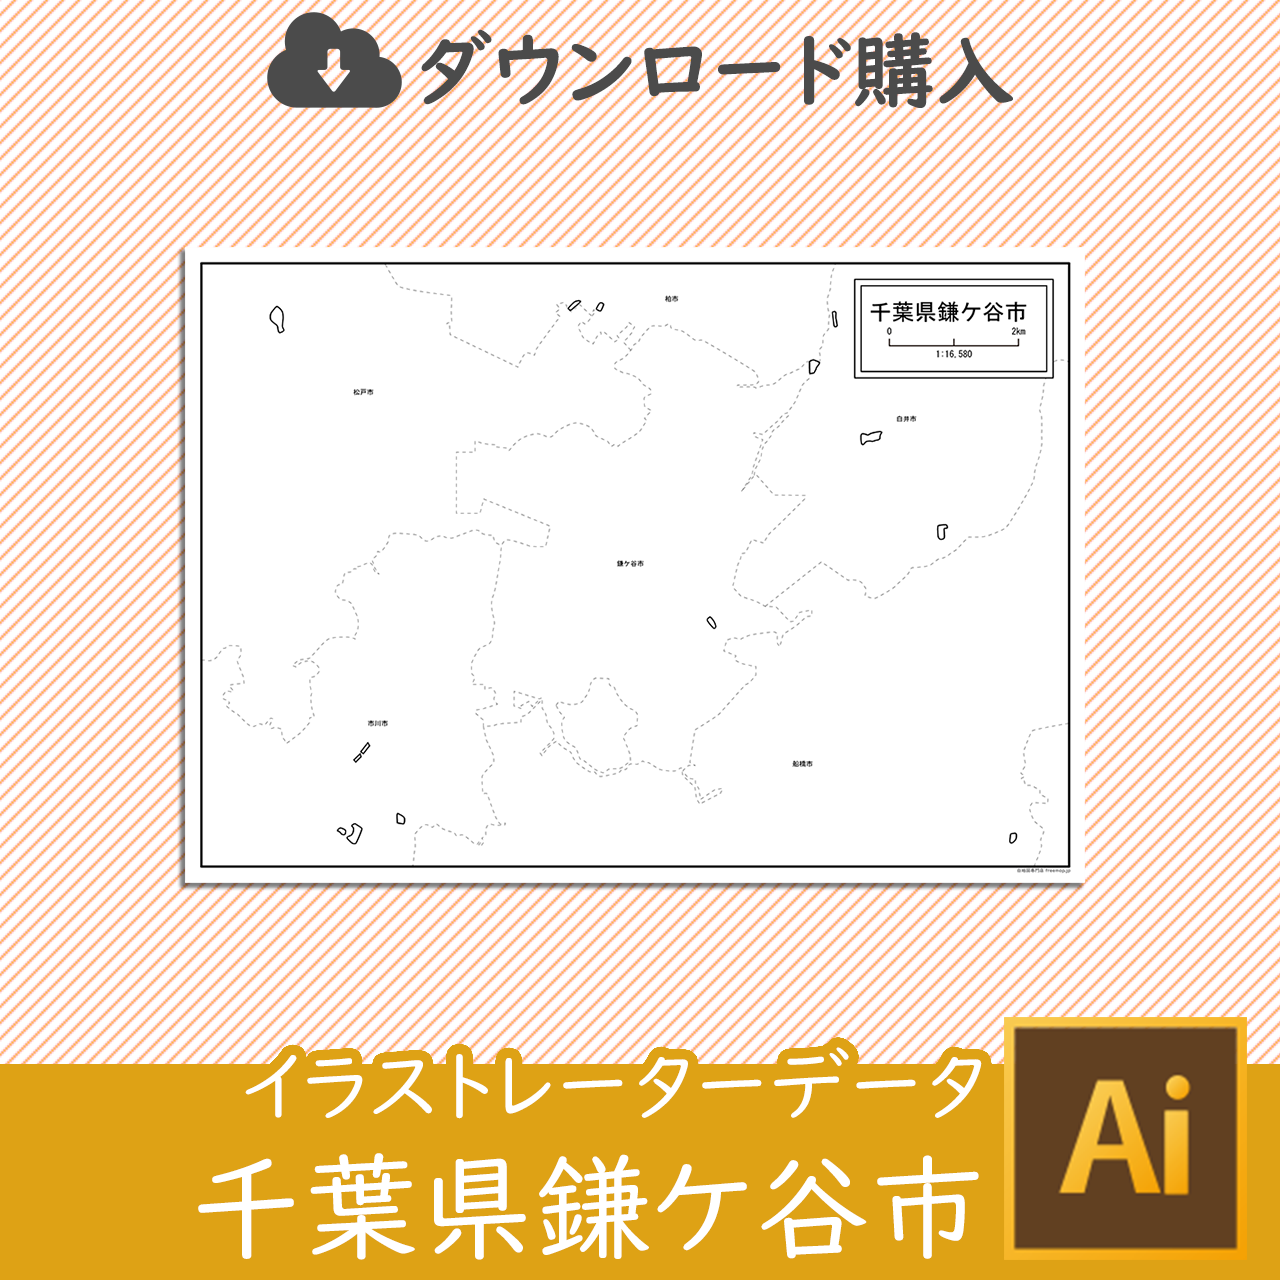 鎌ケ谷市のaiデータのサムネイル画像